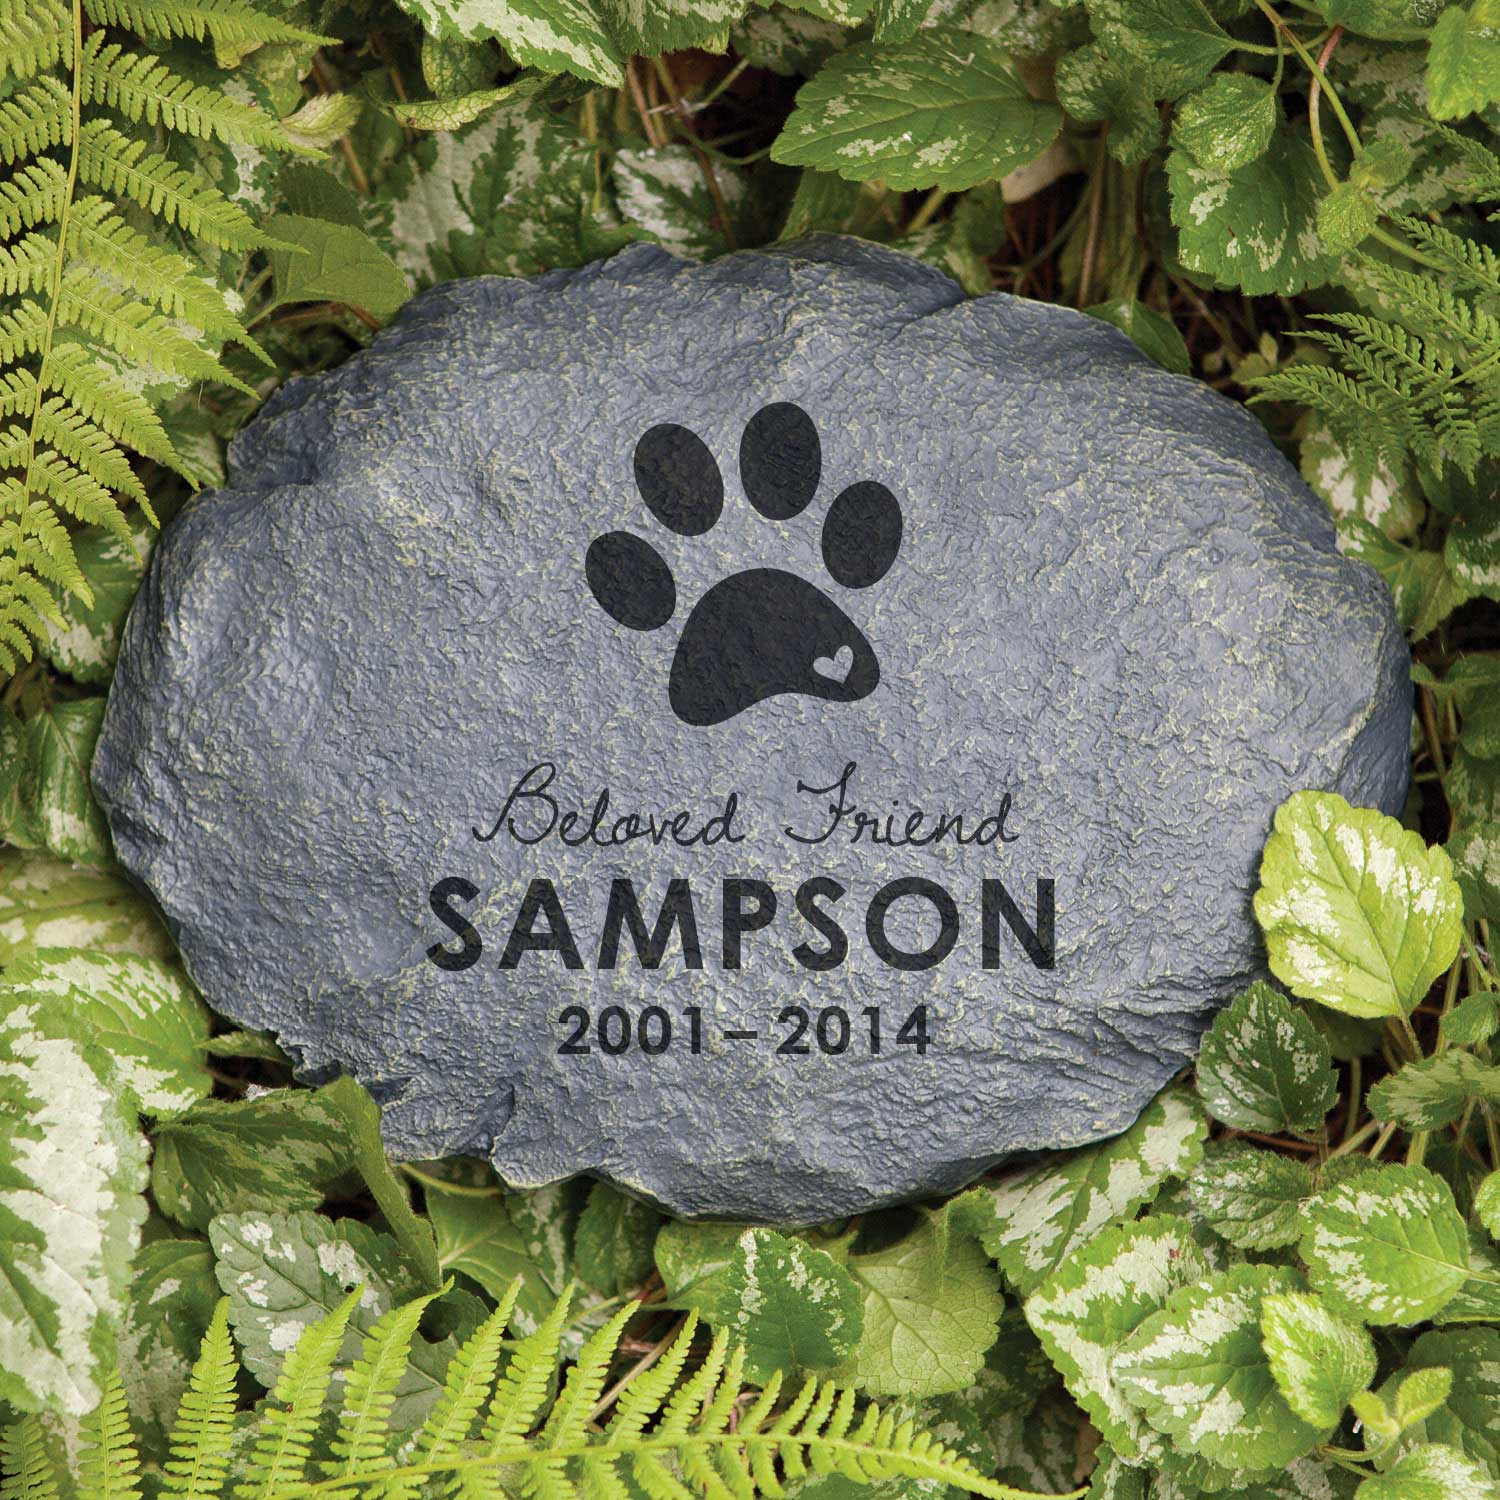 Beloved Friend Personalized Dog Memorial Garden Stone